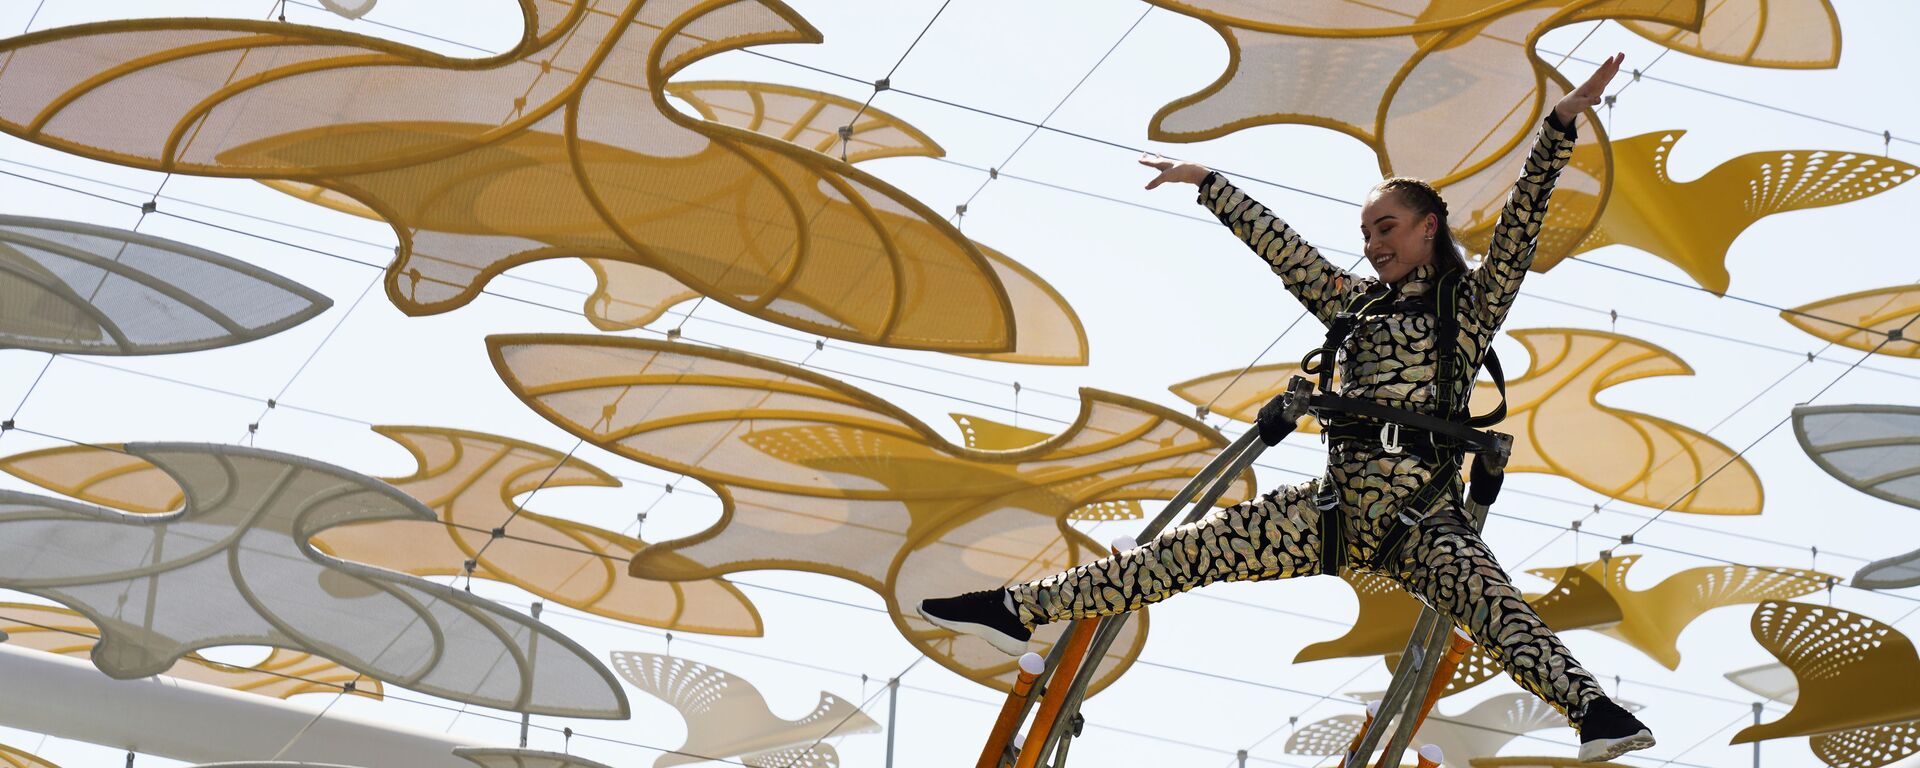 Выступление акробатов на Всемирной выставке Expo-2020 в Дубае, ОАЭ - Sputnik Казахстан, 1920, 05.10.2021